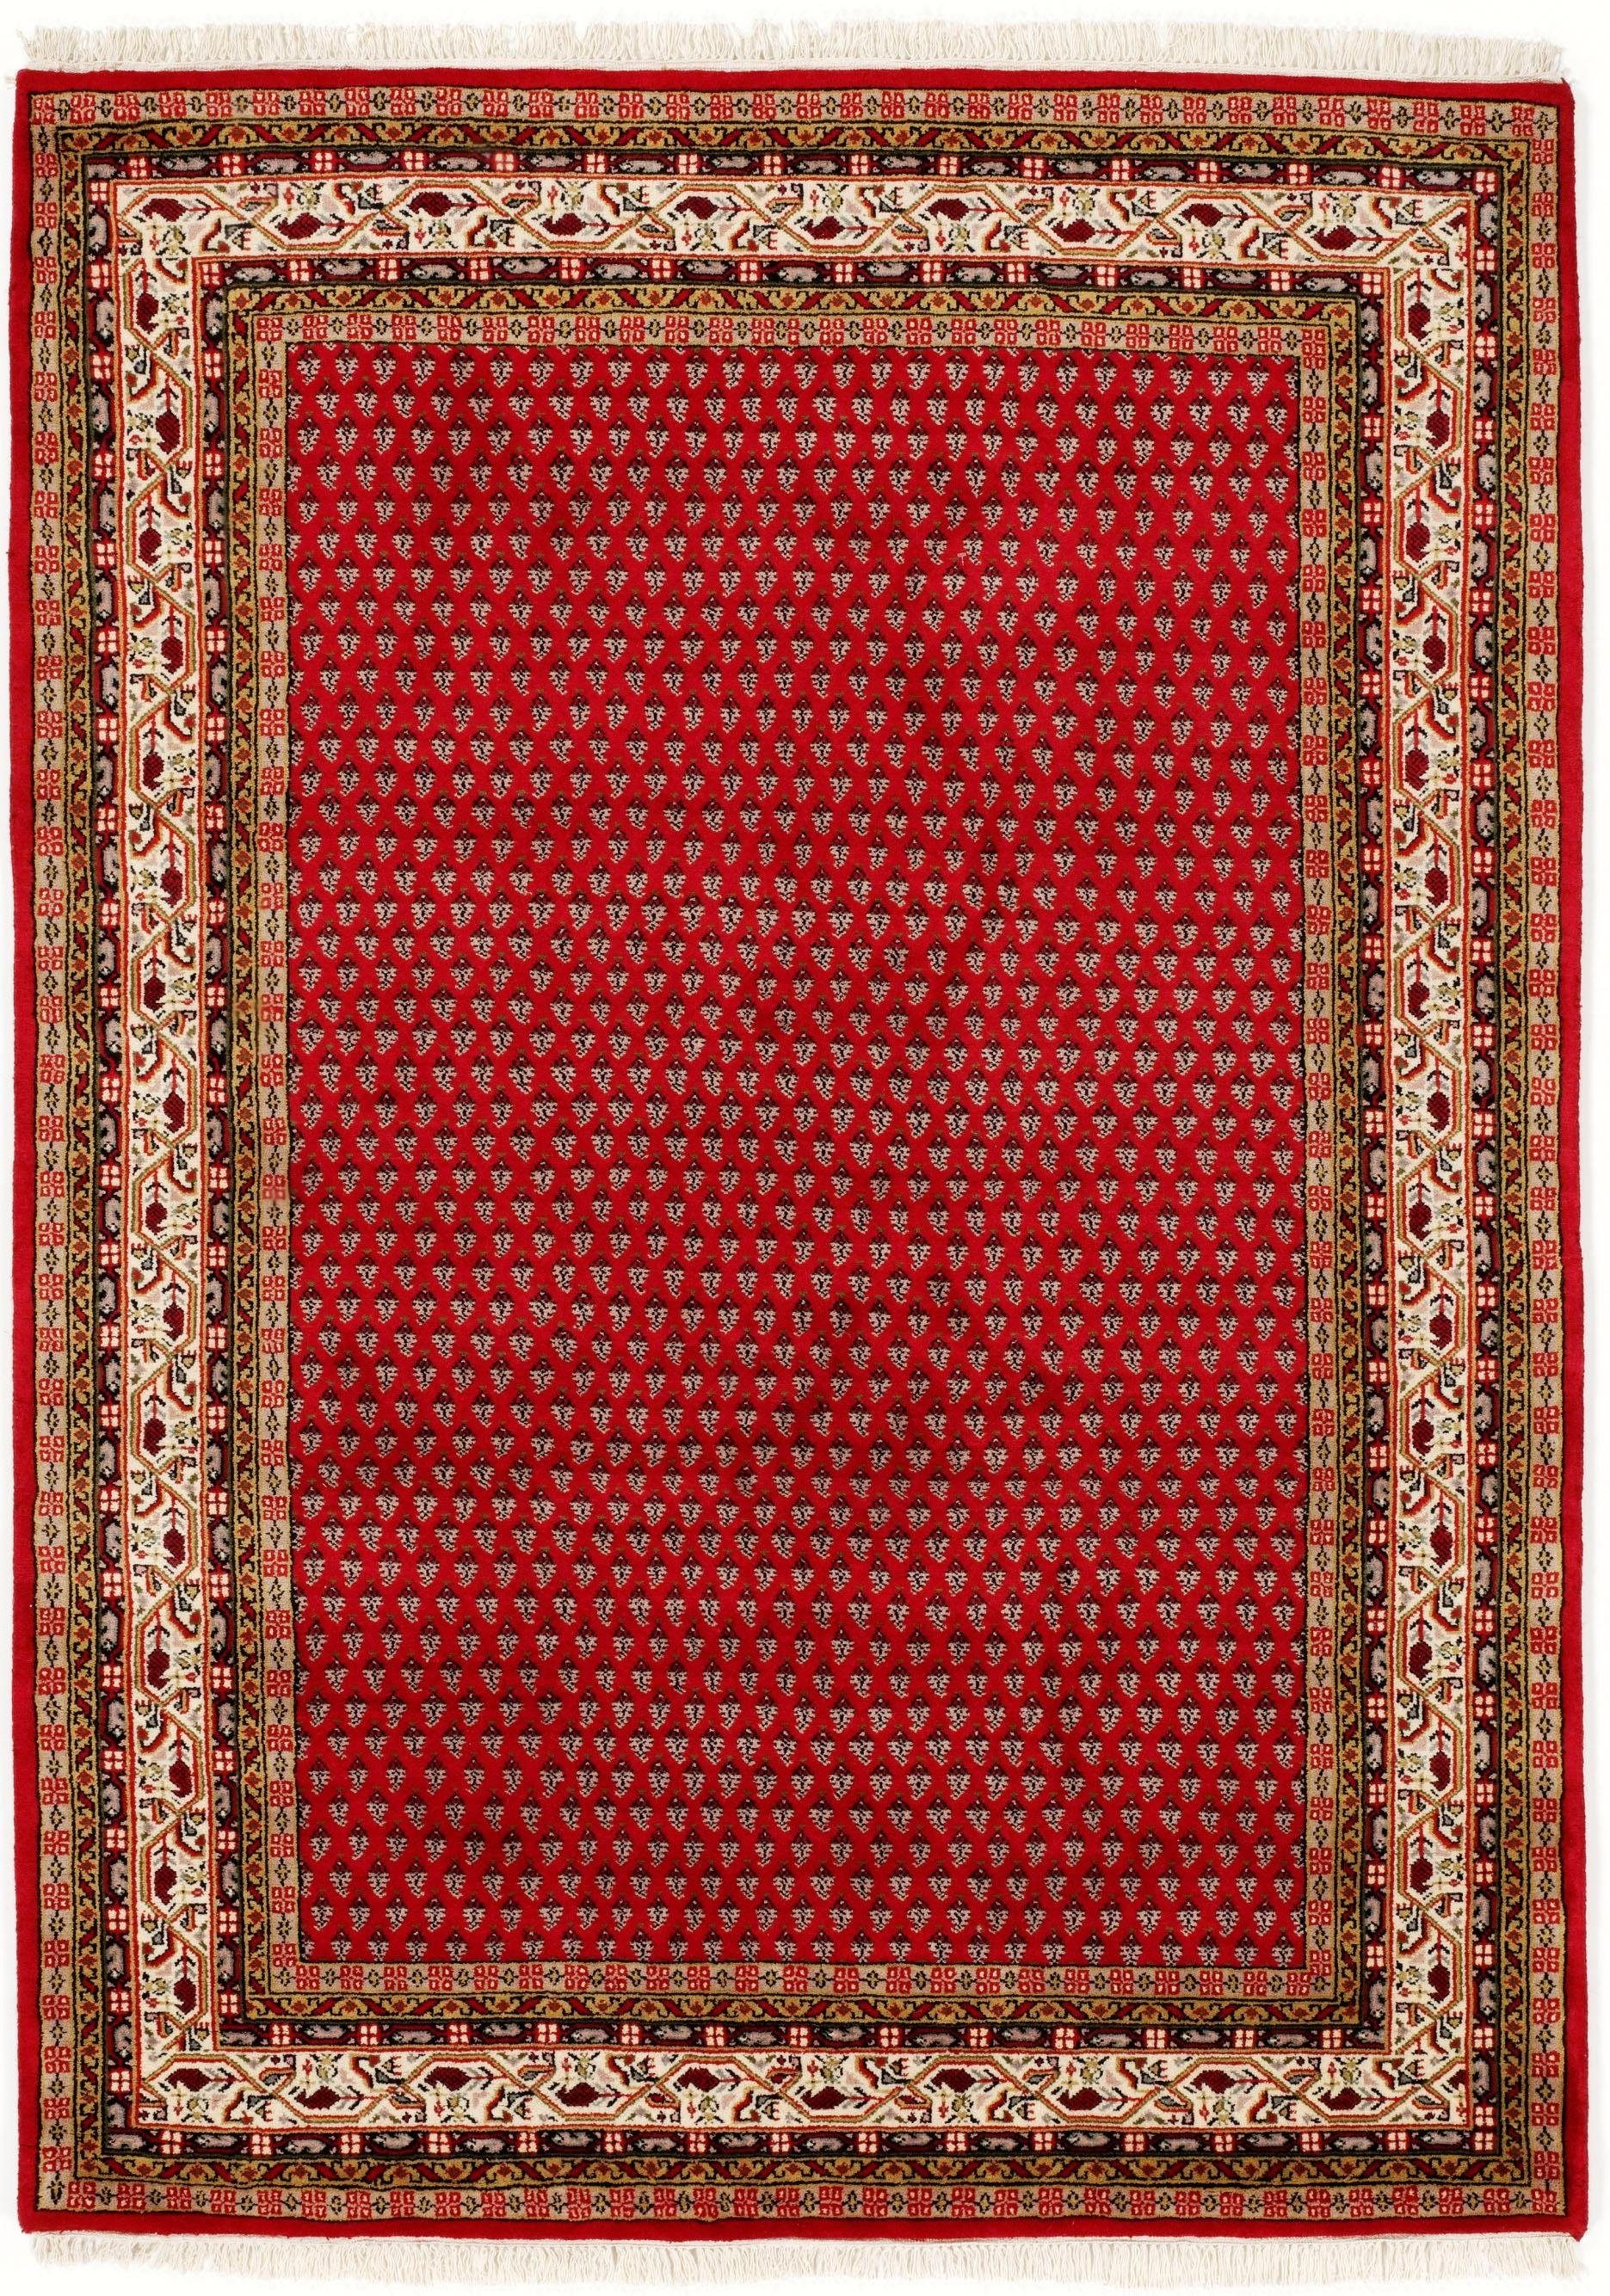 OCI DIE TEPPICHMARKE Oosters tapijt Sakki Mir zuivere wol, met de hand geknoopt, met franje, woonkamer